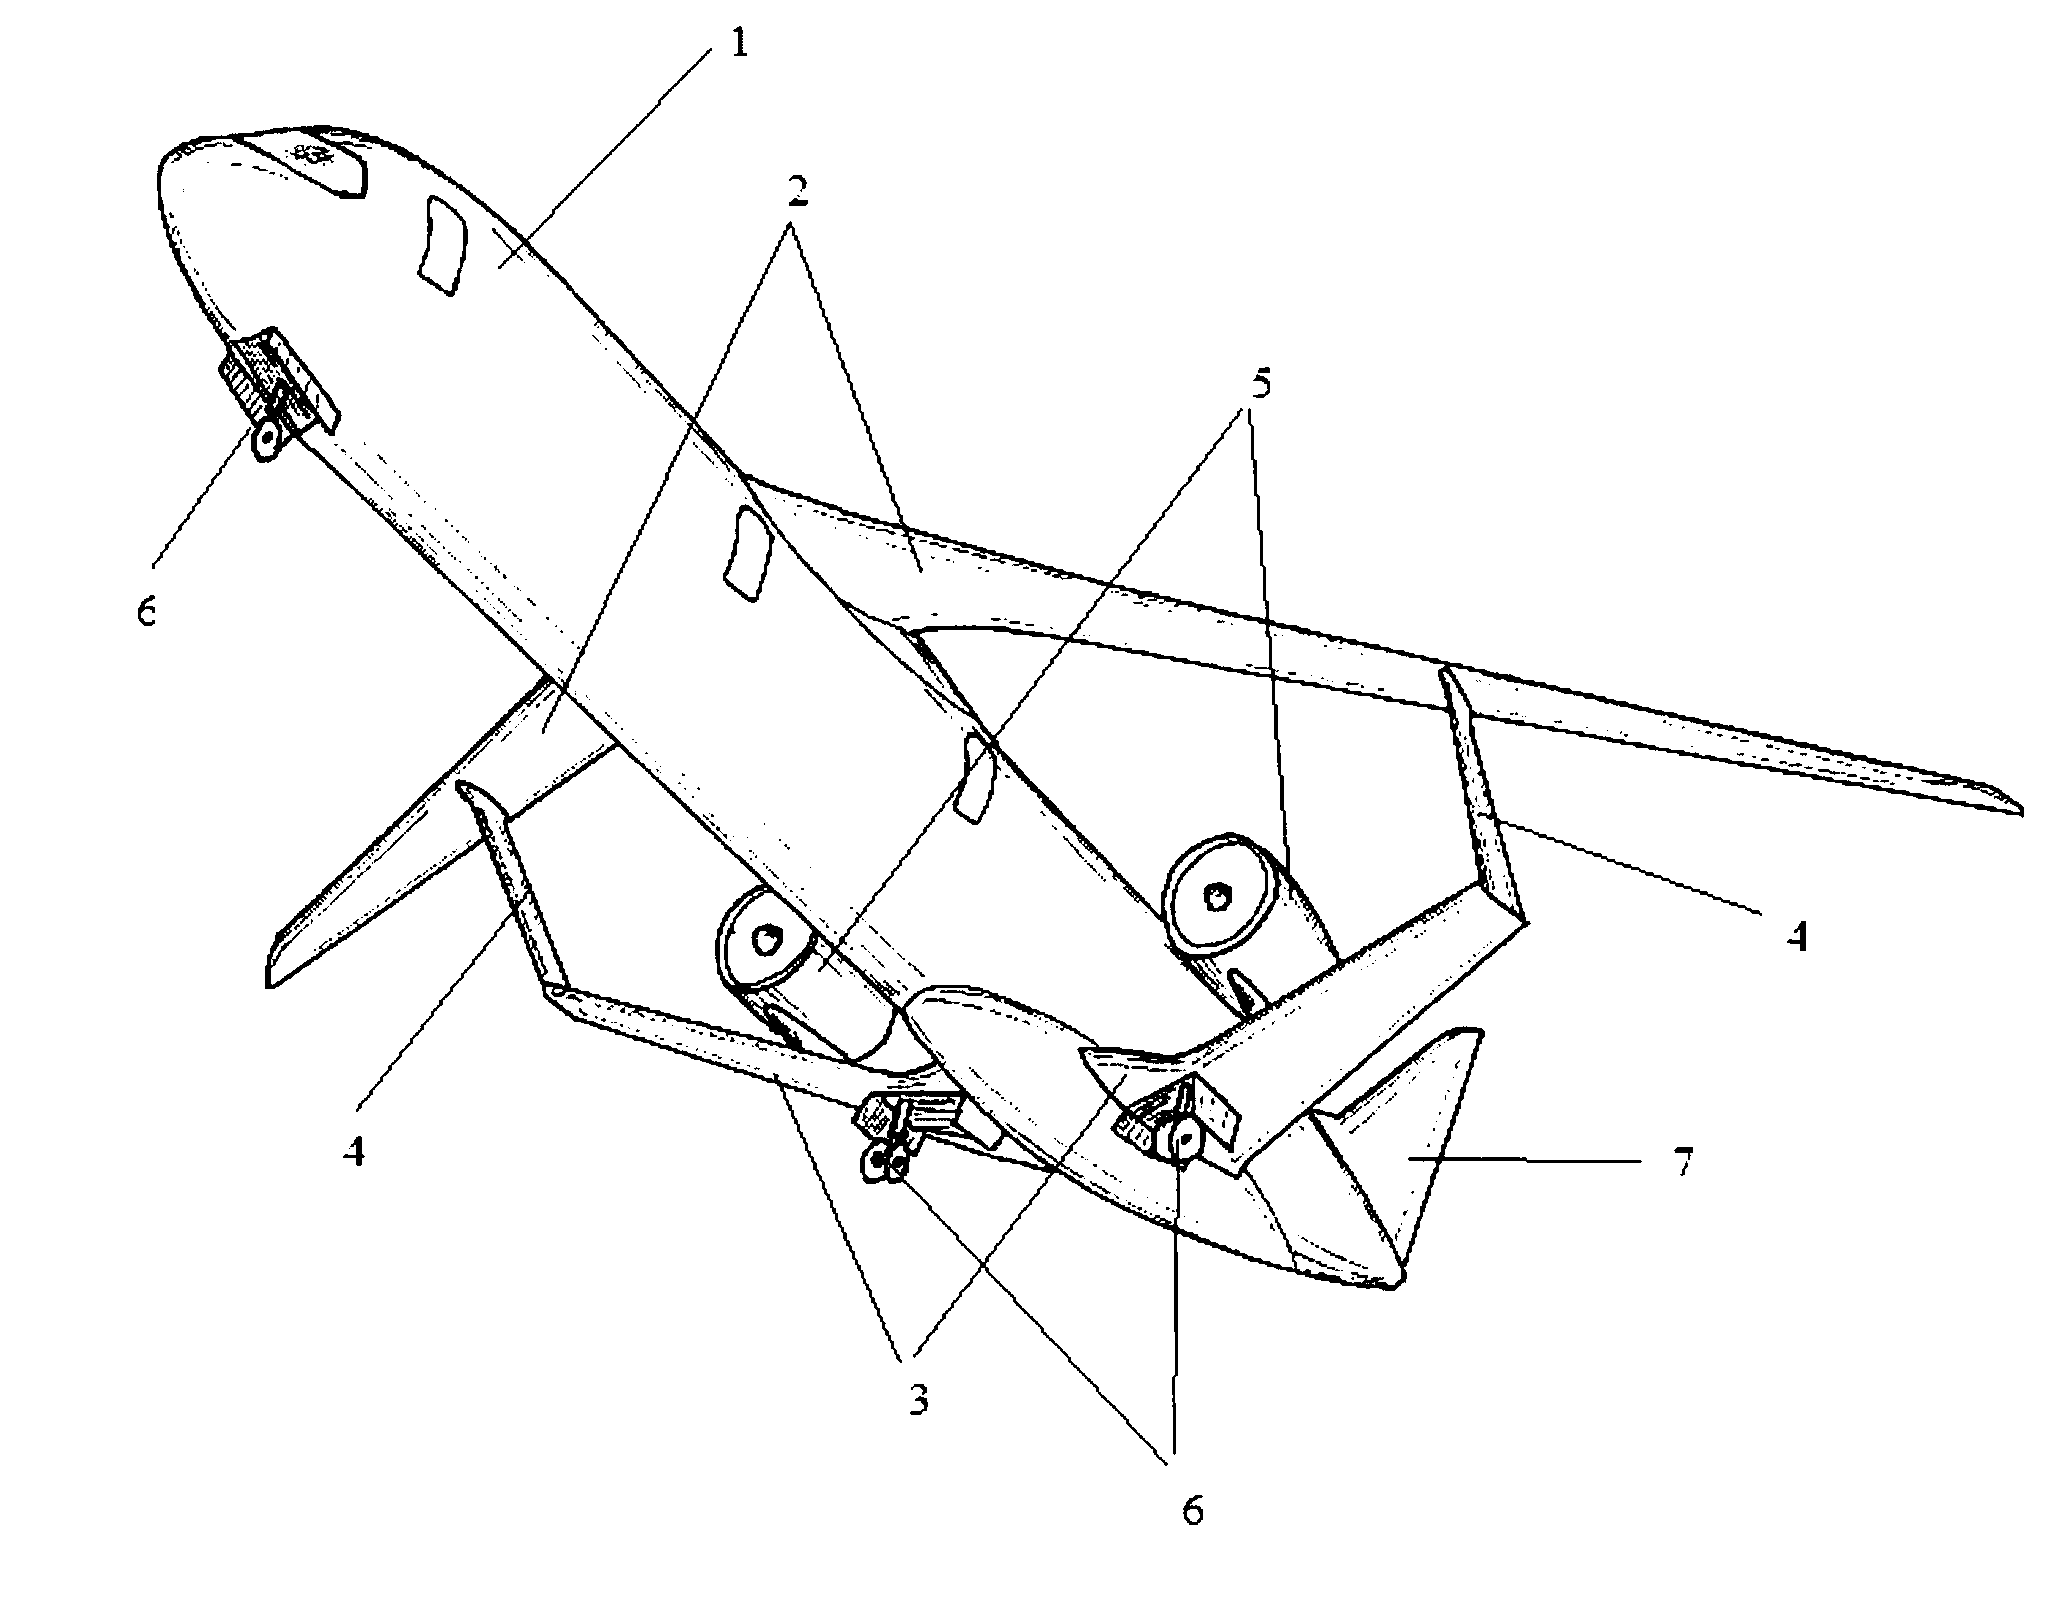 Aircraft having a lambda-box wing configuration